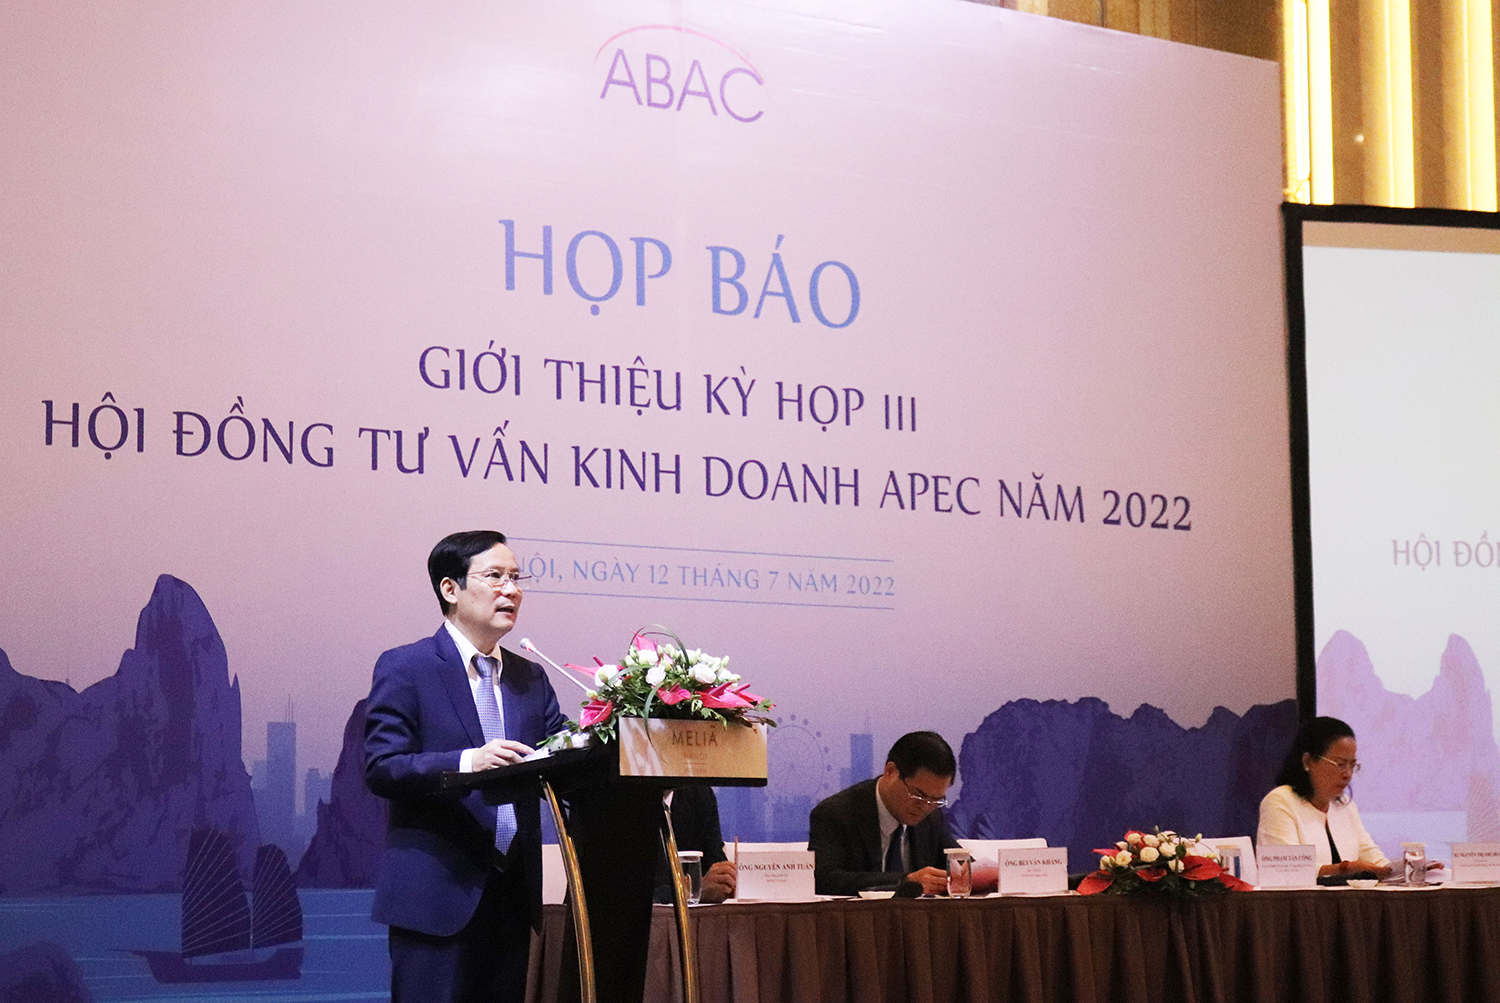 Chủ tịch VCCI Phạm Tấn Công phát biểu tại cuộc họp báo giới thiệu về ABAC III.